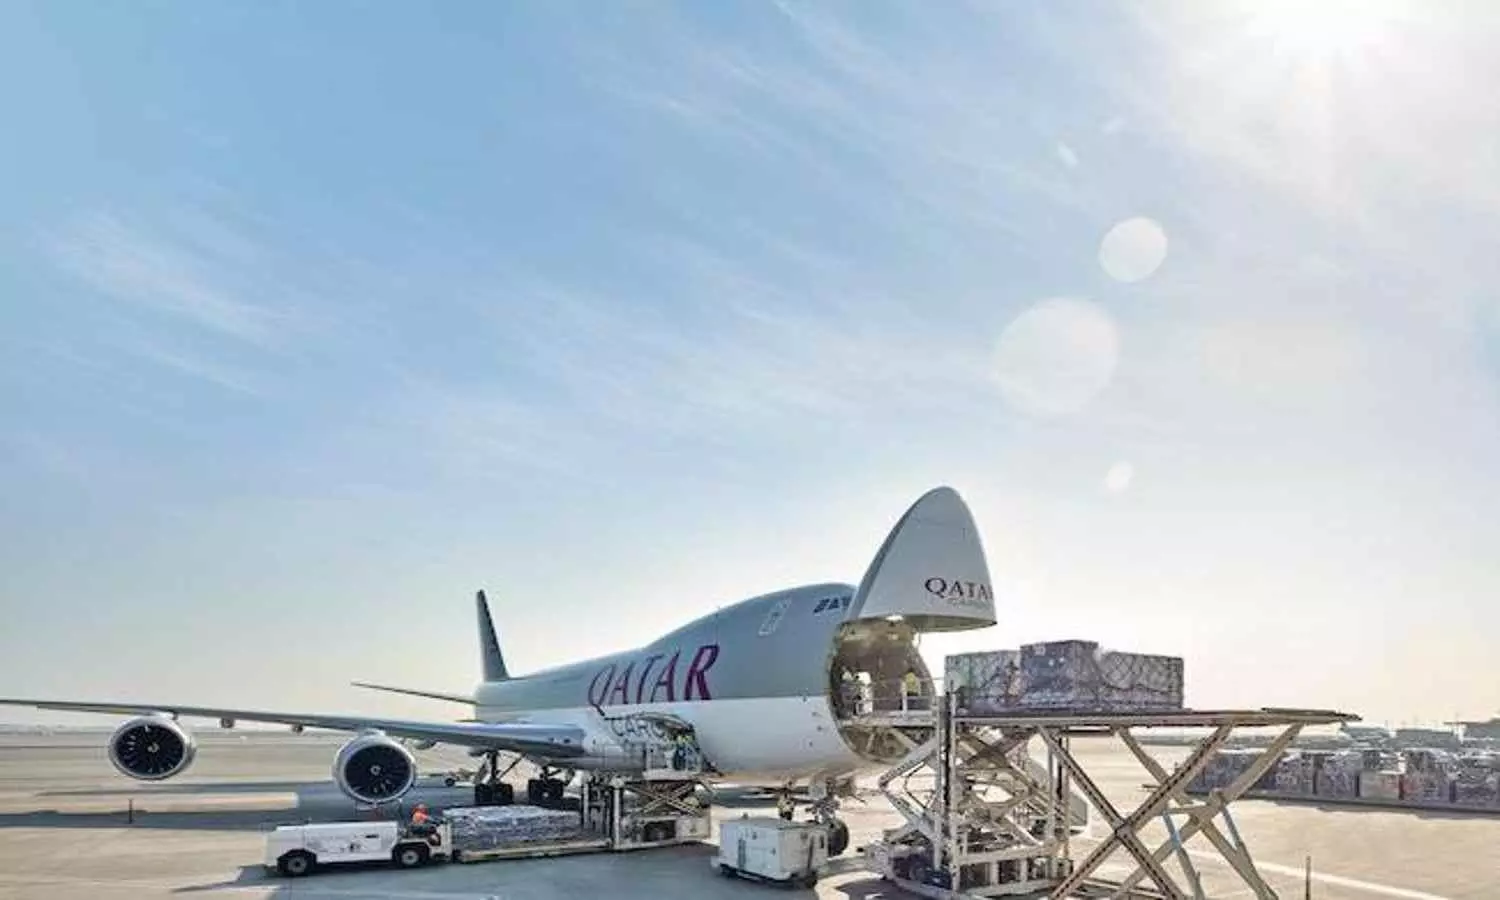 Qatar Airways Cargo is focusing on digital transformation